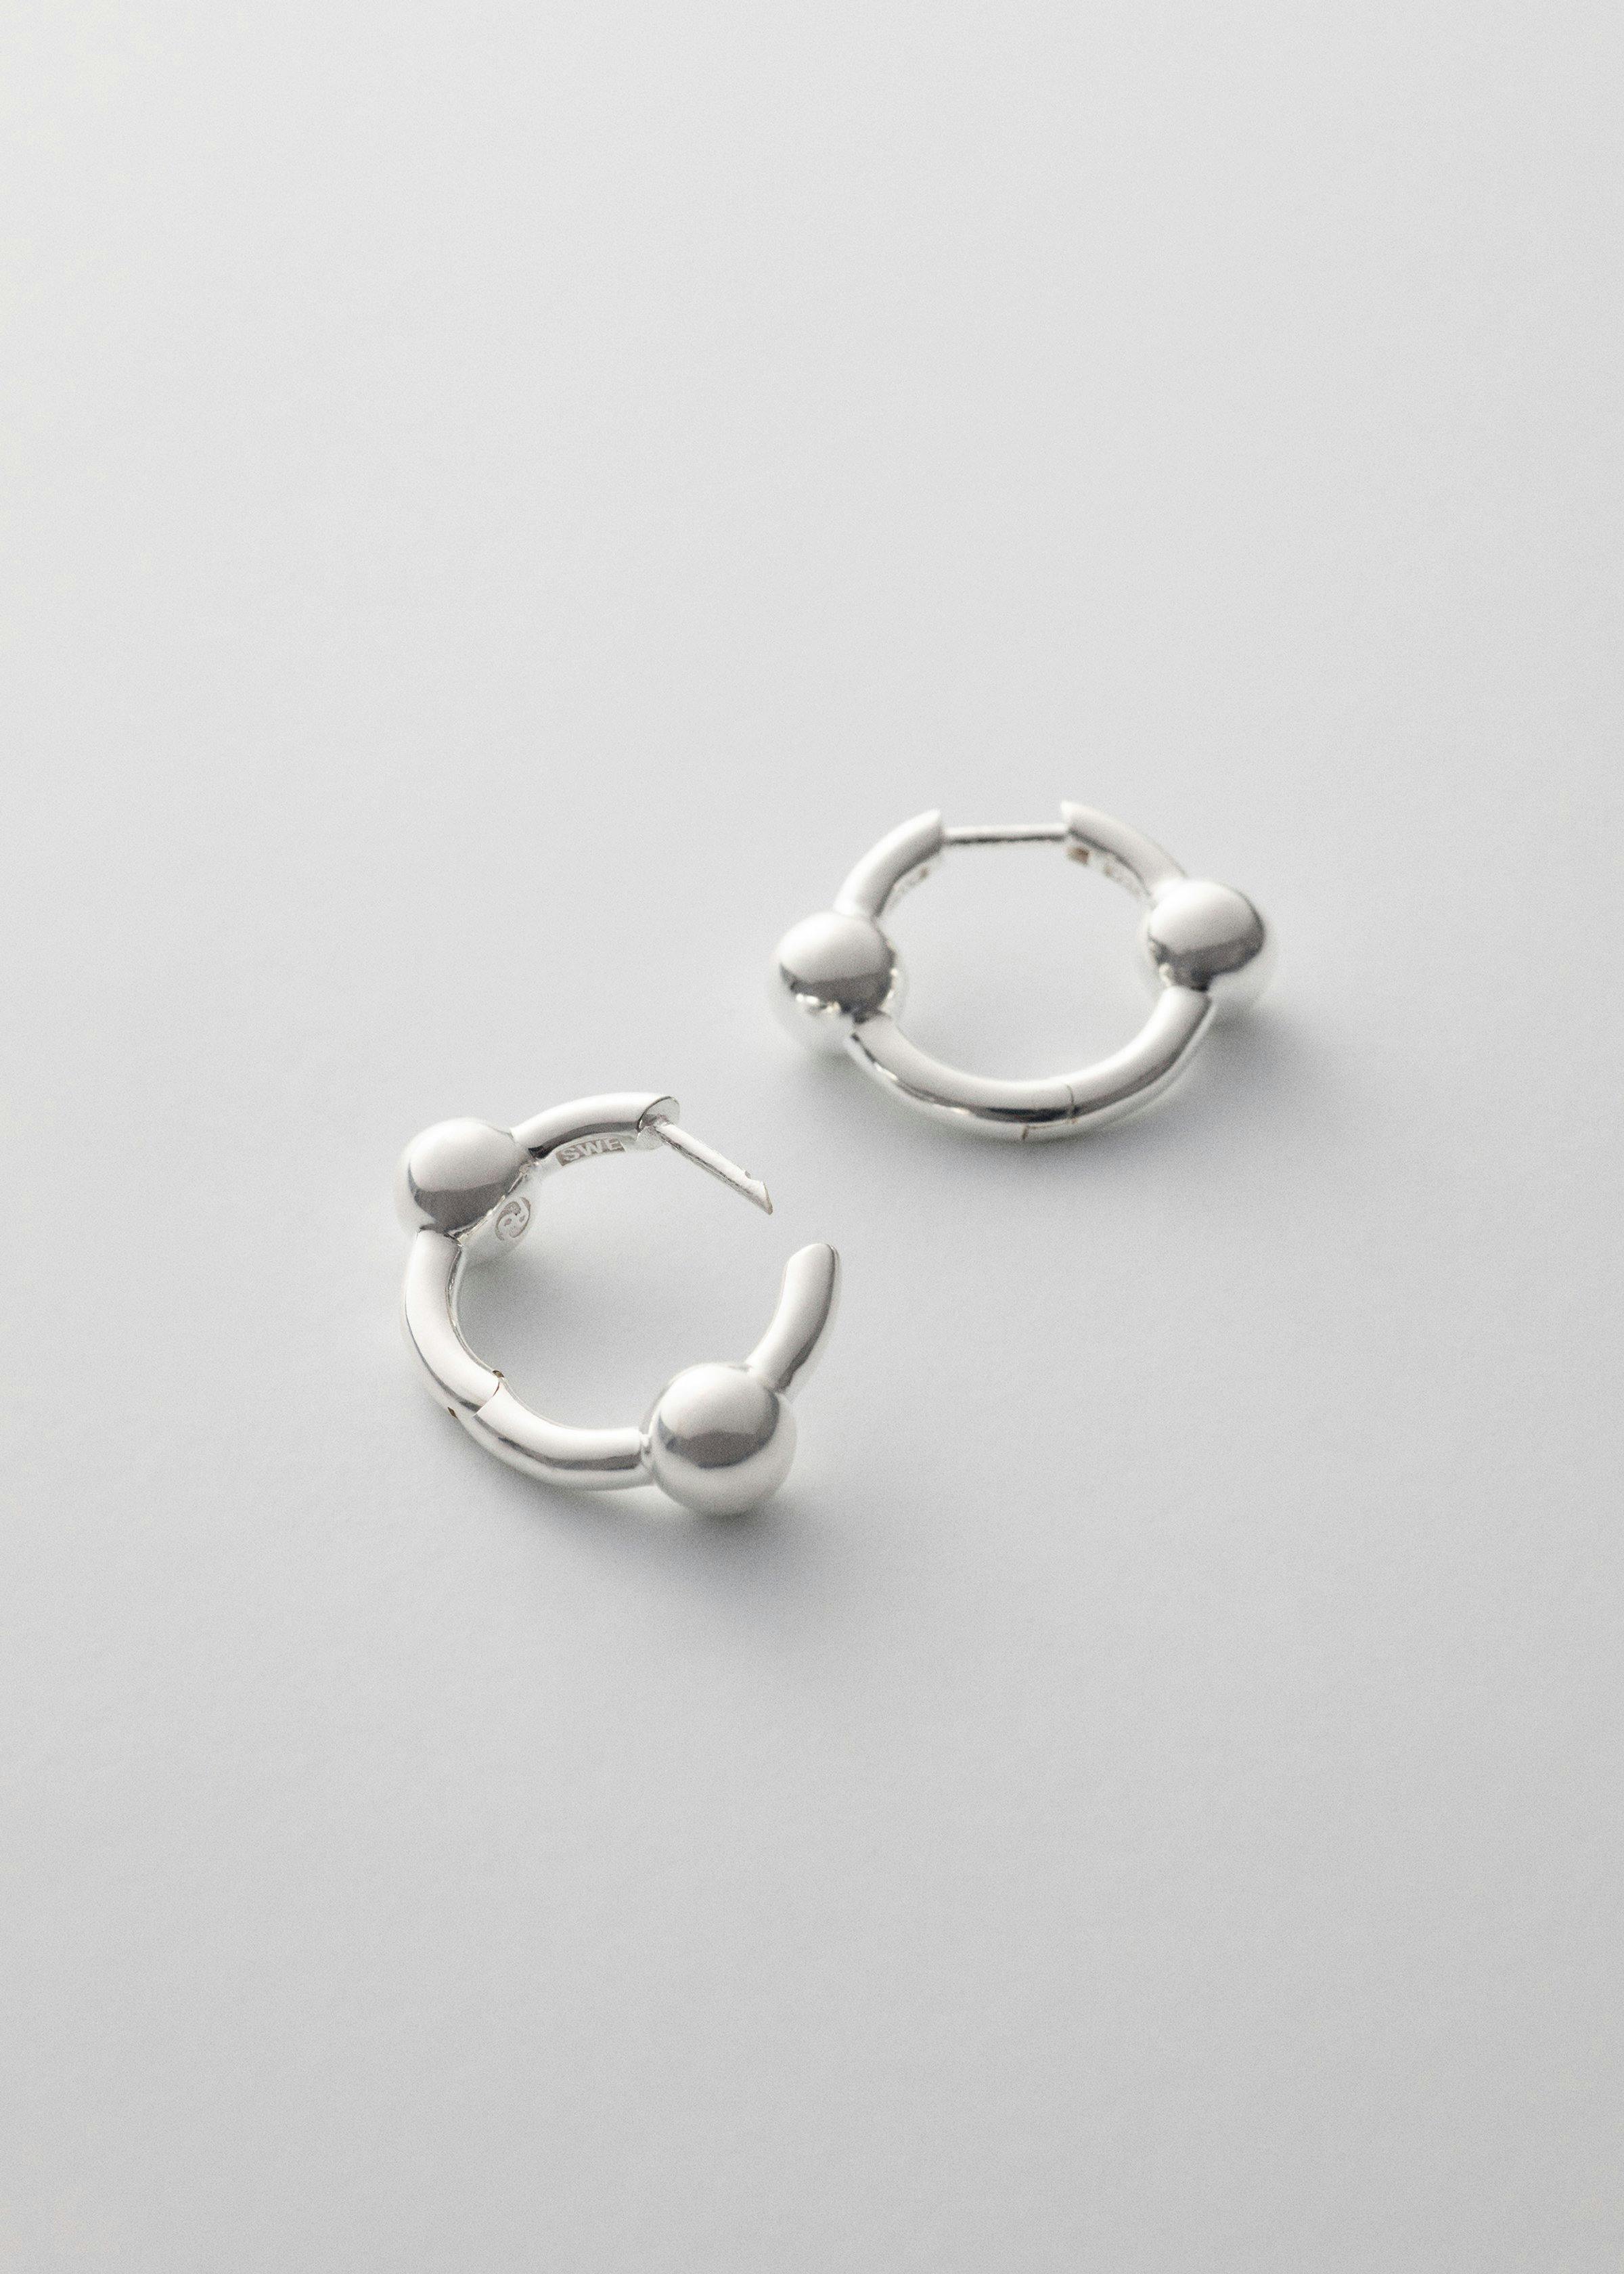 Orbit earrings